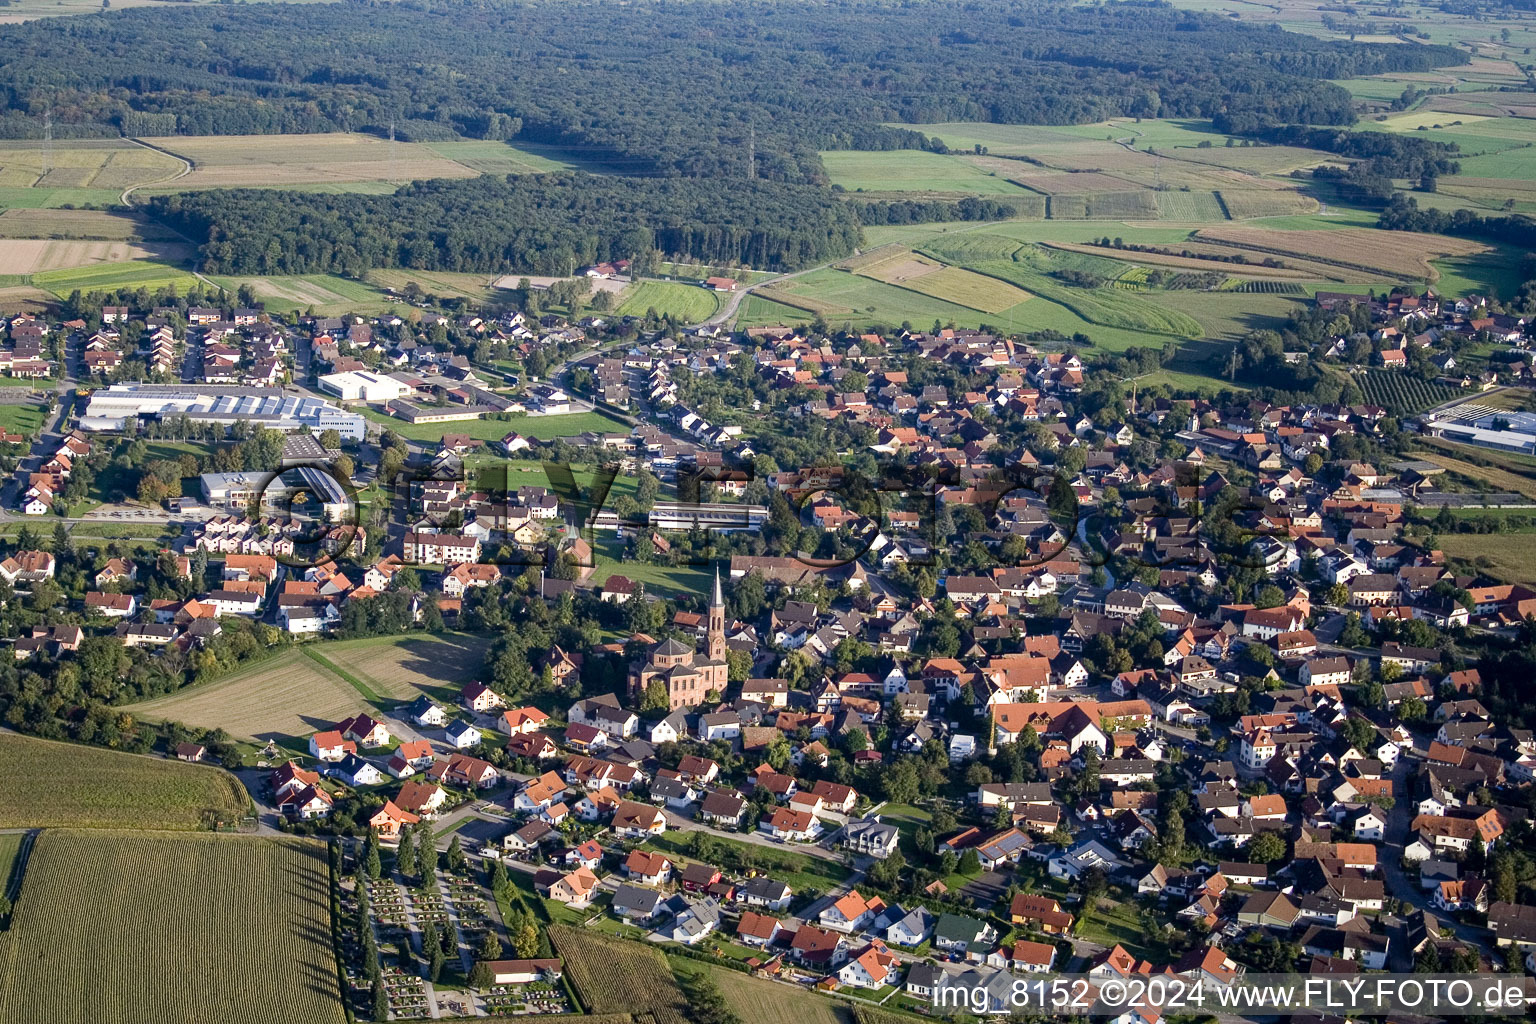 Vue aérienne de Bâtiment d'église au centre du village à le quartier Rheinbischofsheim in Rheinau dans le département Bade-Wurtemberg, Allemagne